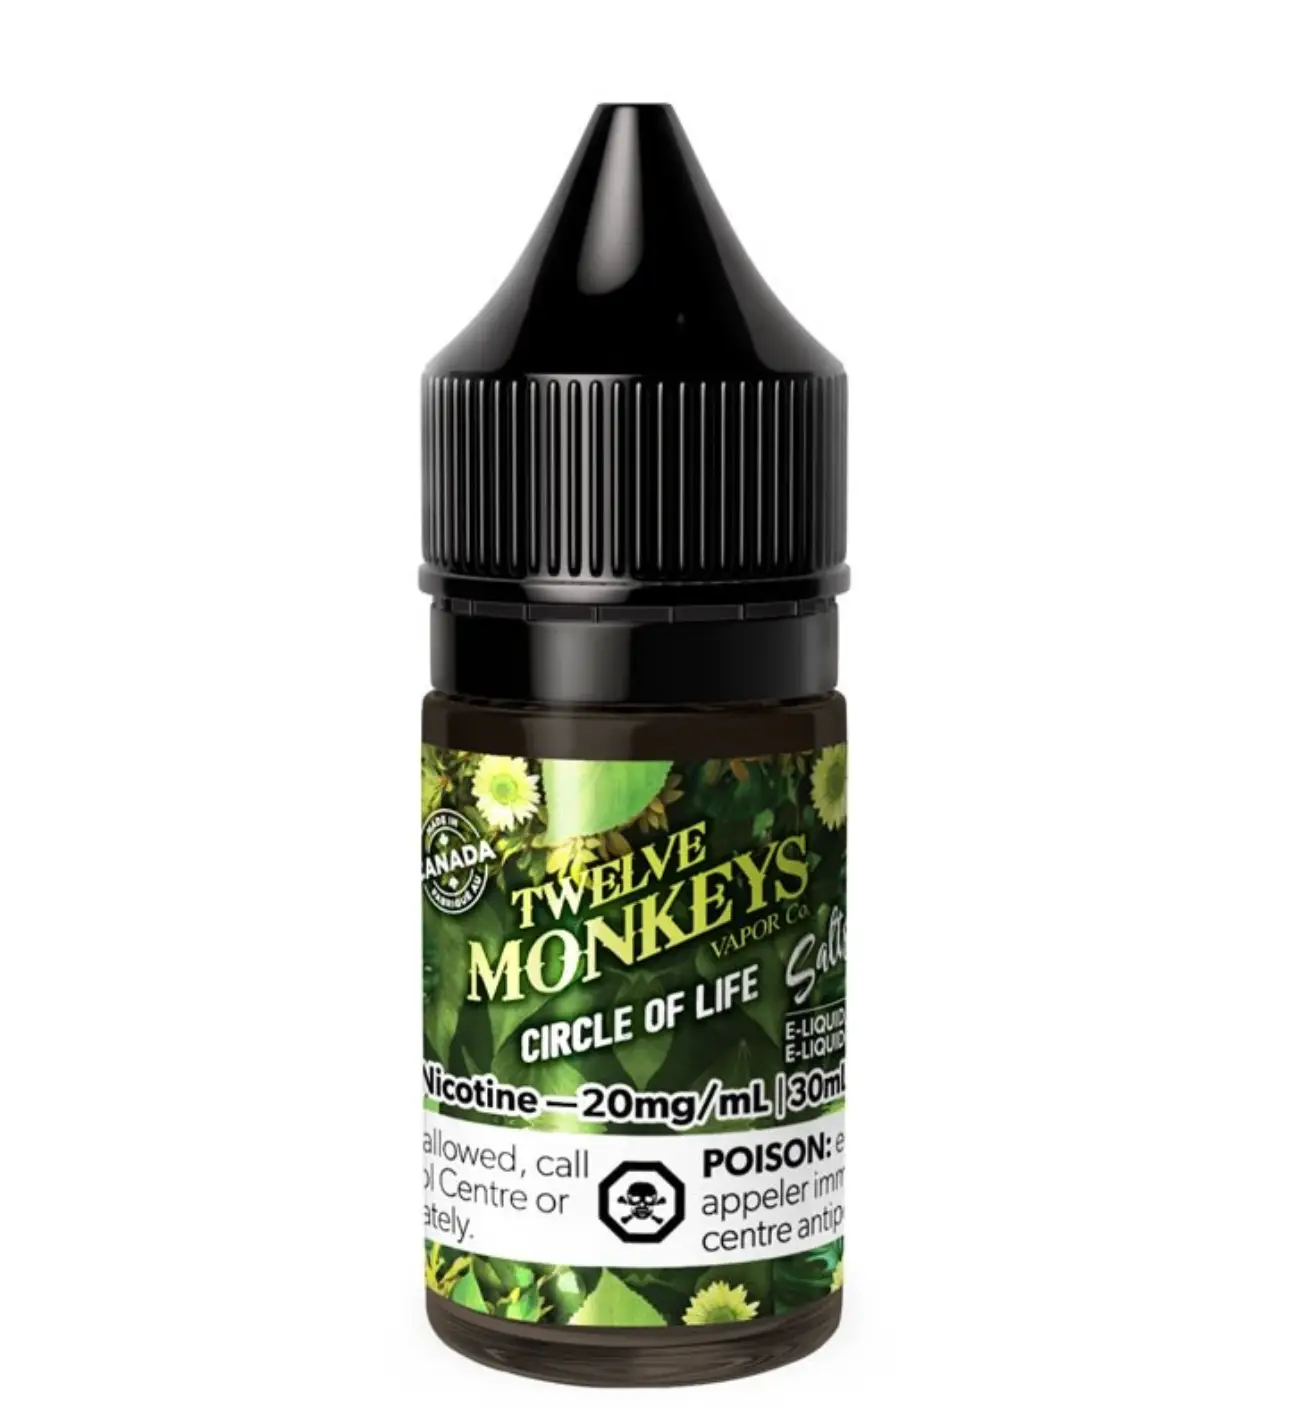 12 Monkeys - Circle of Life - Vape juice - Salt Nicotine